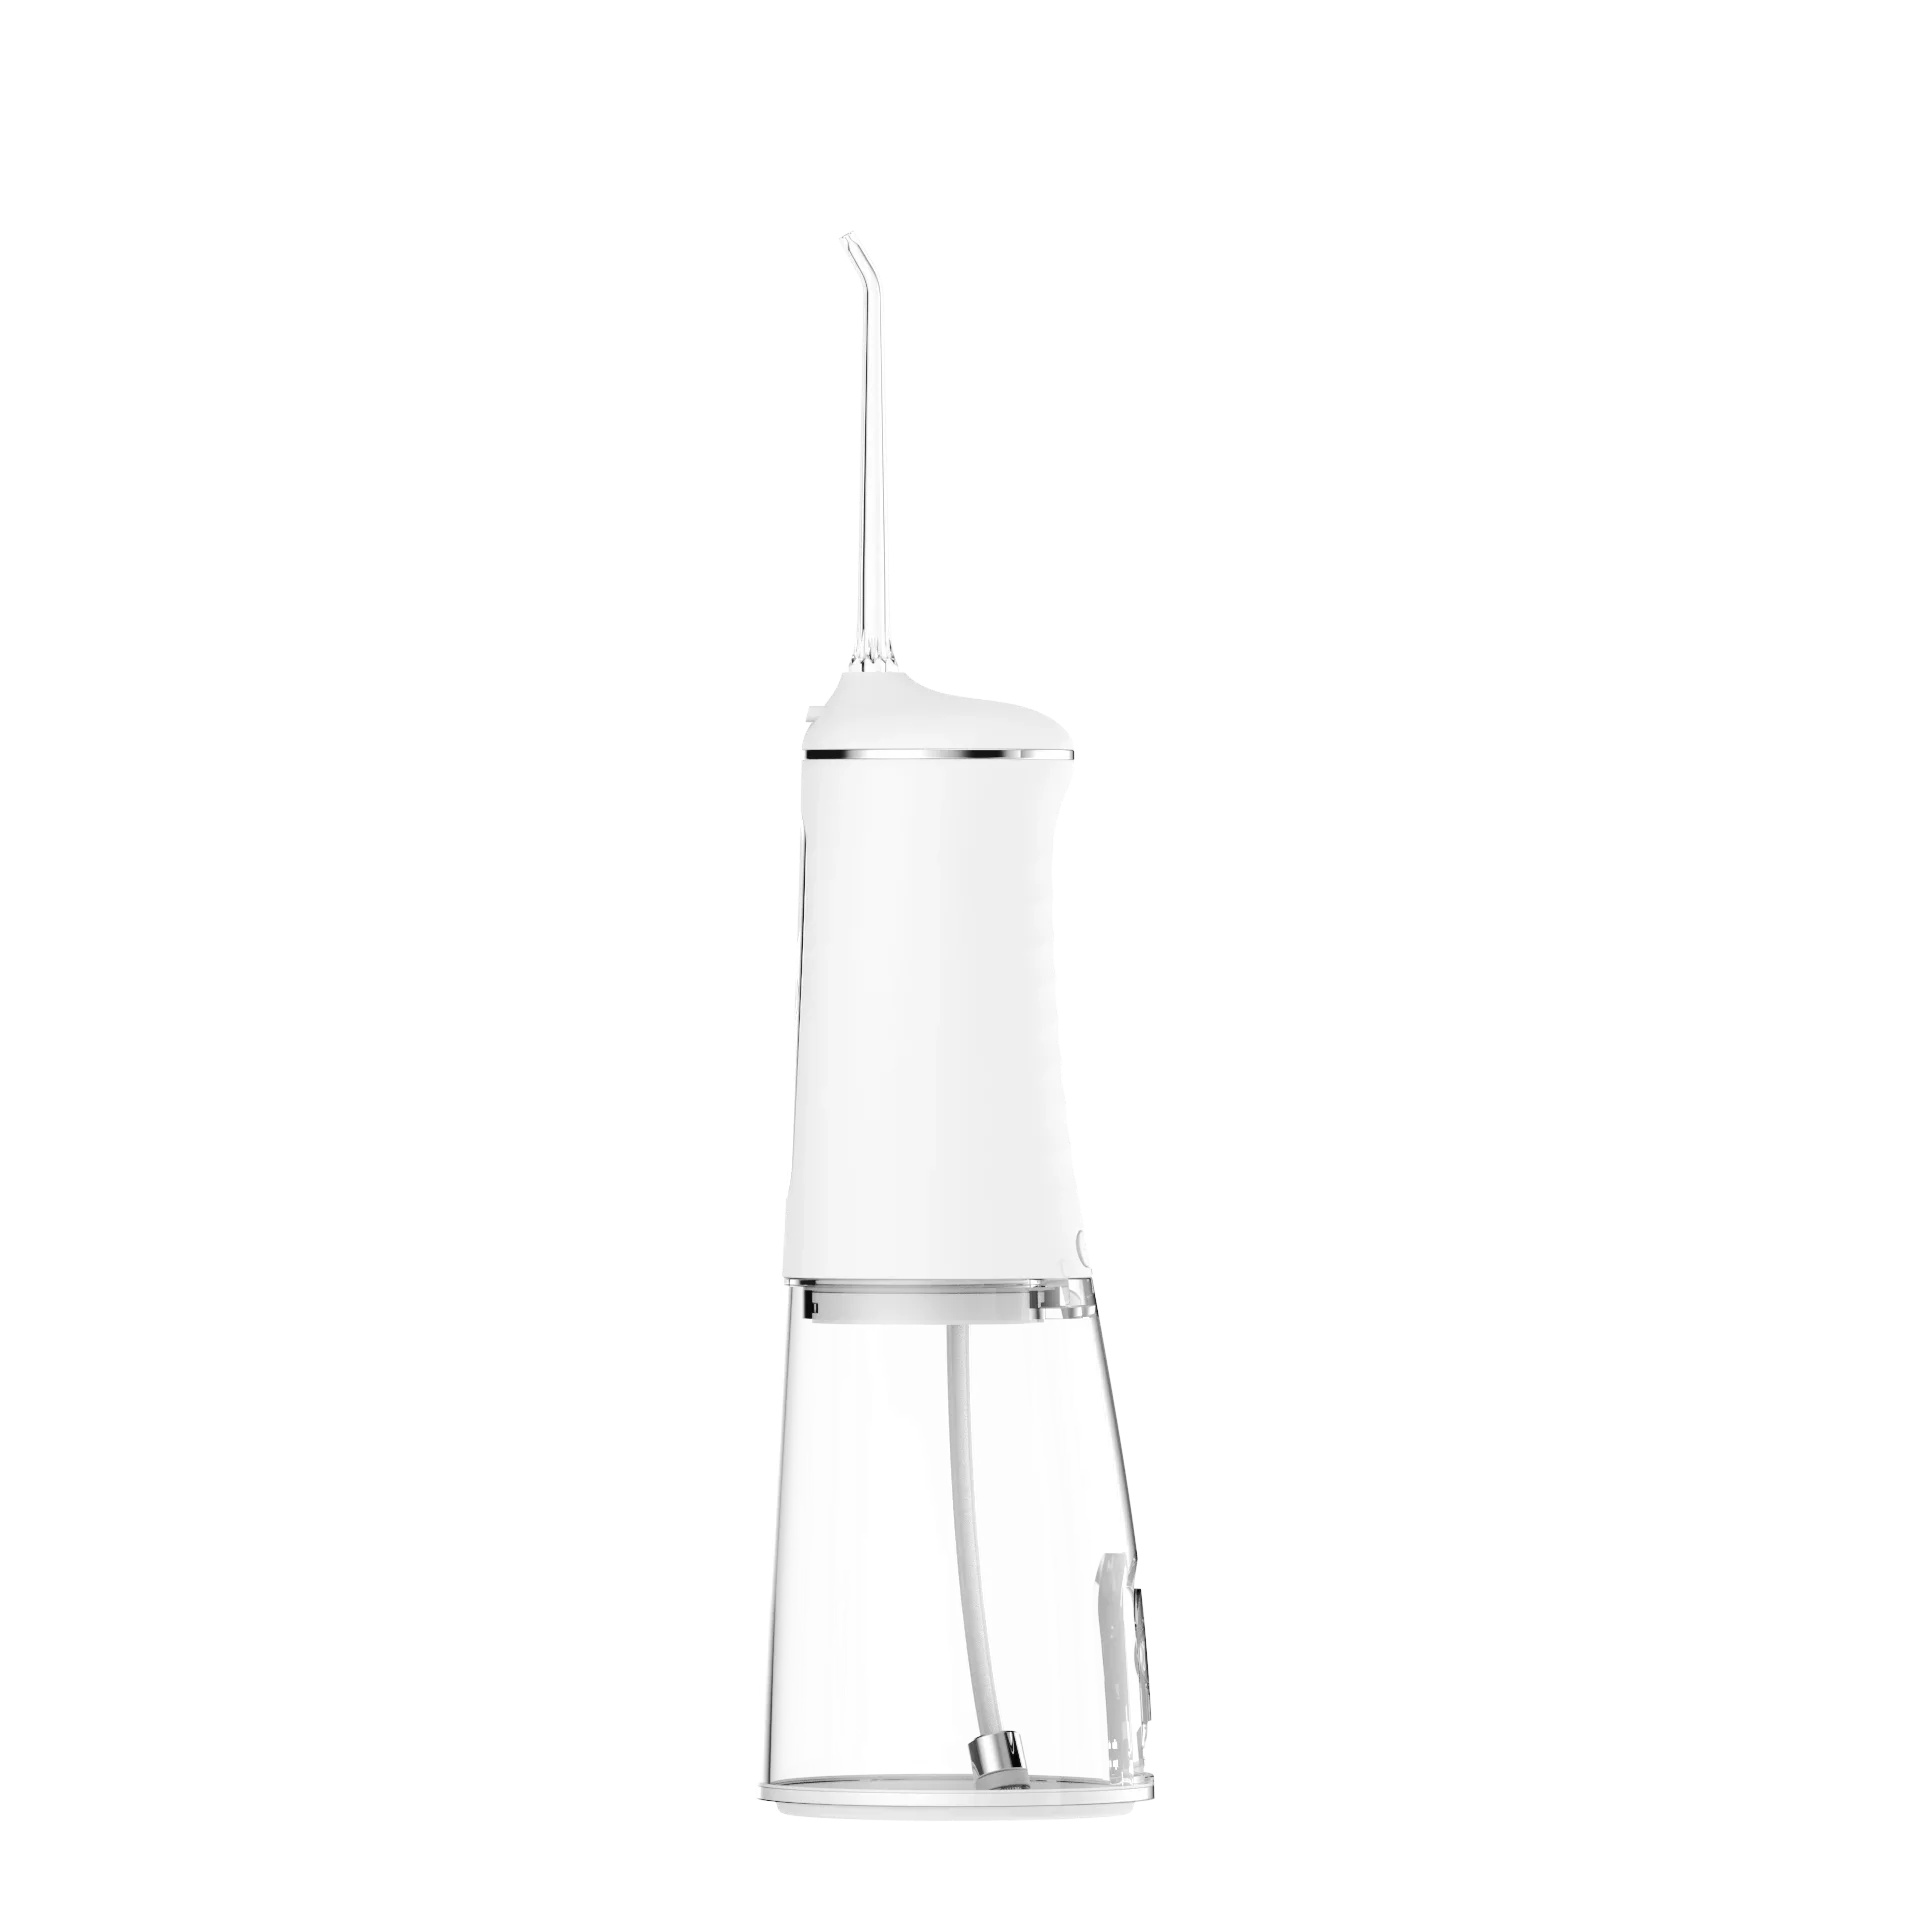 IPX7 טיימר למבוגרים ציוד אופציונלי ניקוי אוראלי רטט אקוסטי מים שטיפת שיניים חיטוי אולטרה סגול